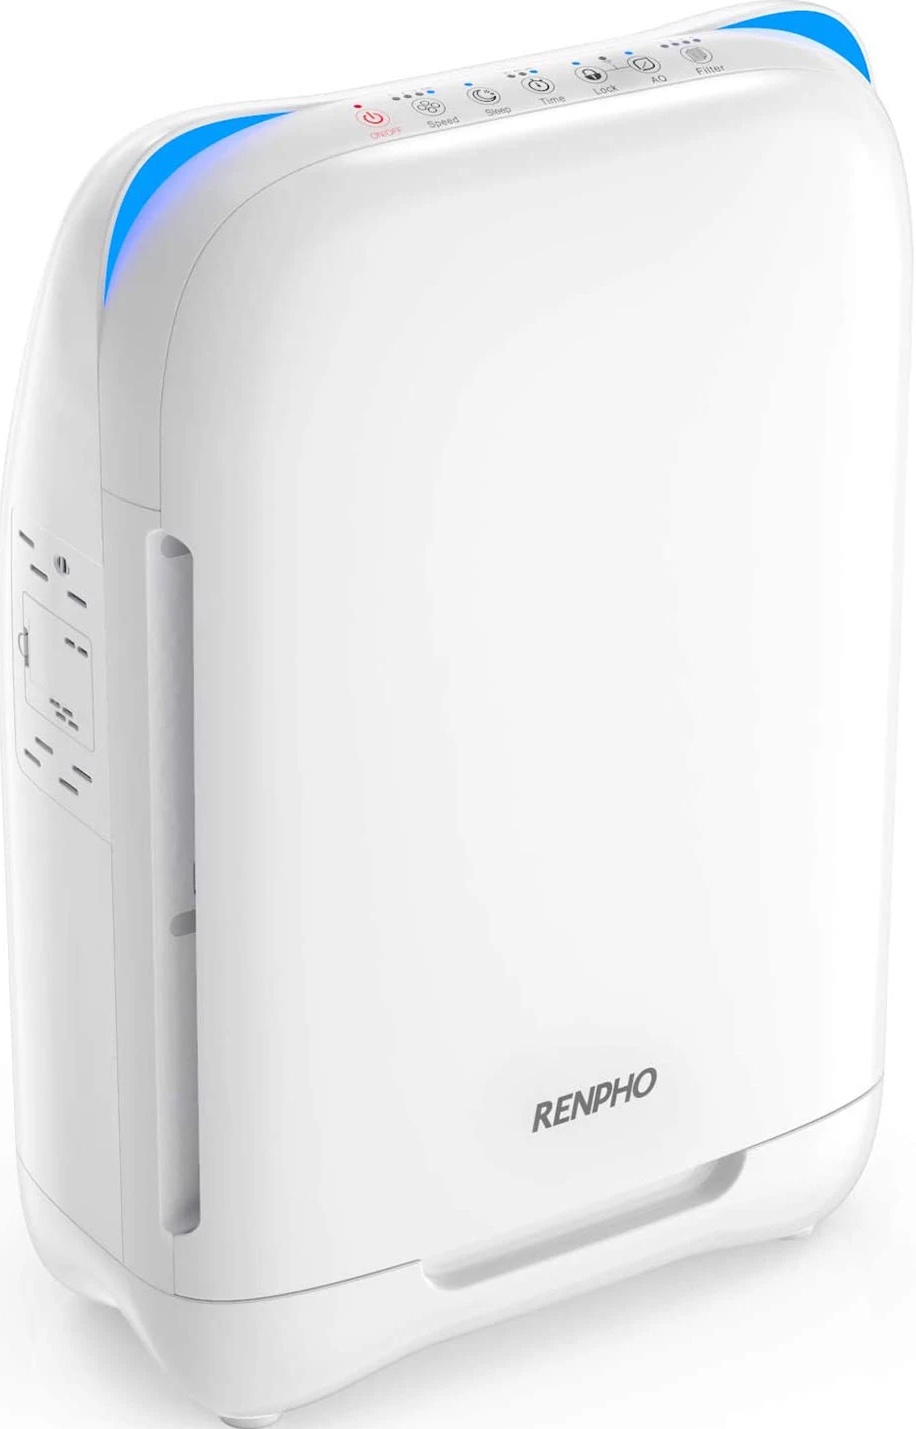 Renpho Ap001 Air Purifier